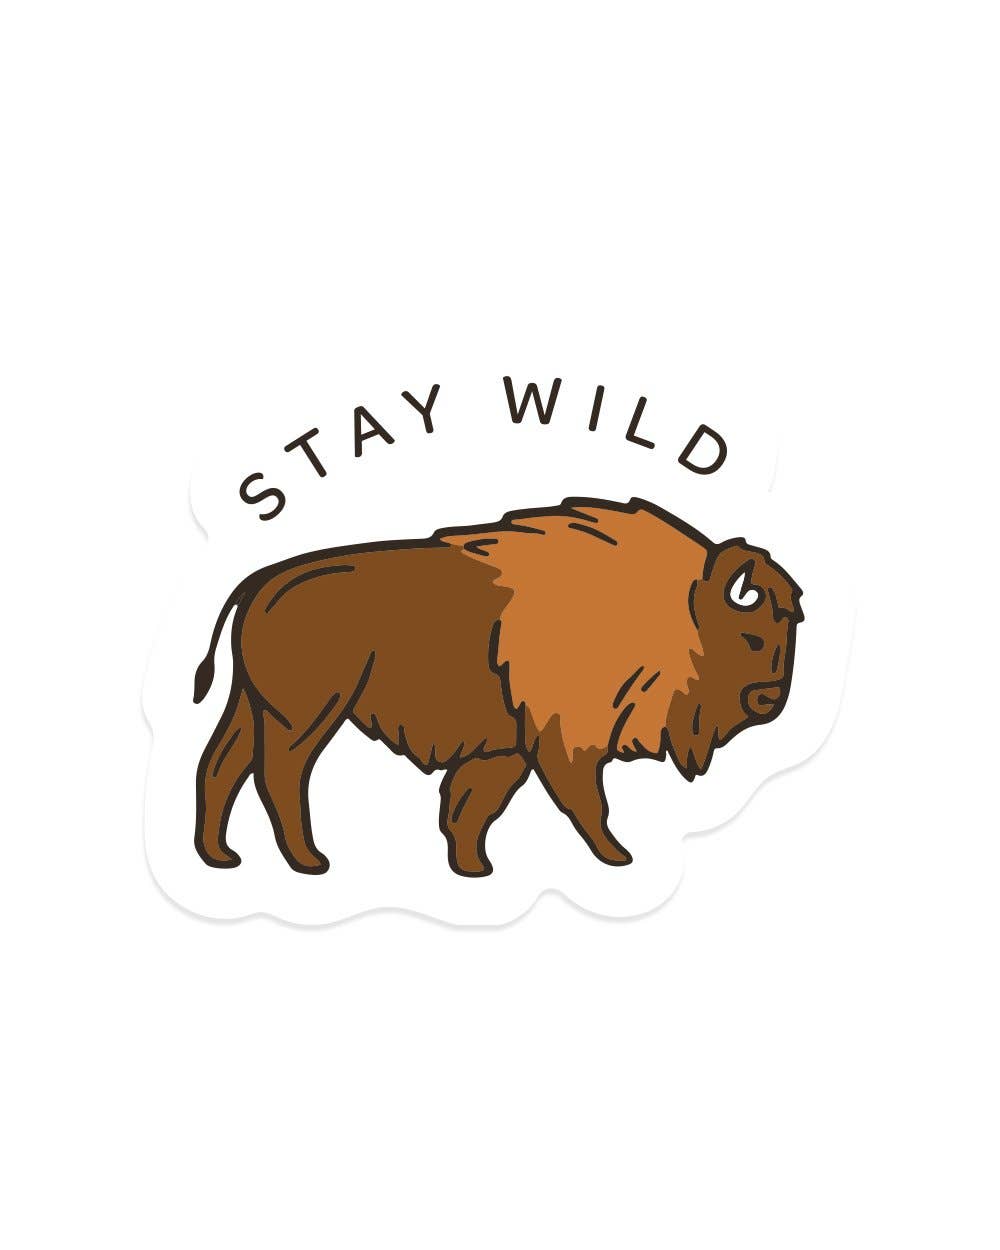 Keep Nature Wild - Stay Wild Bison | Sticker